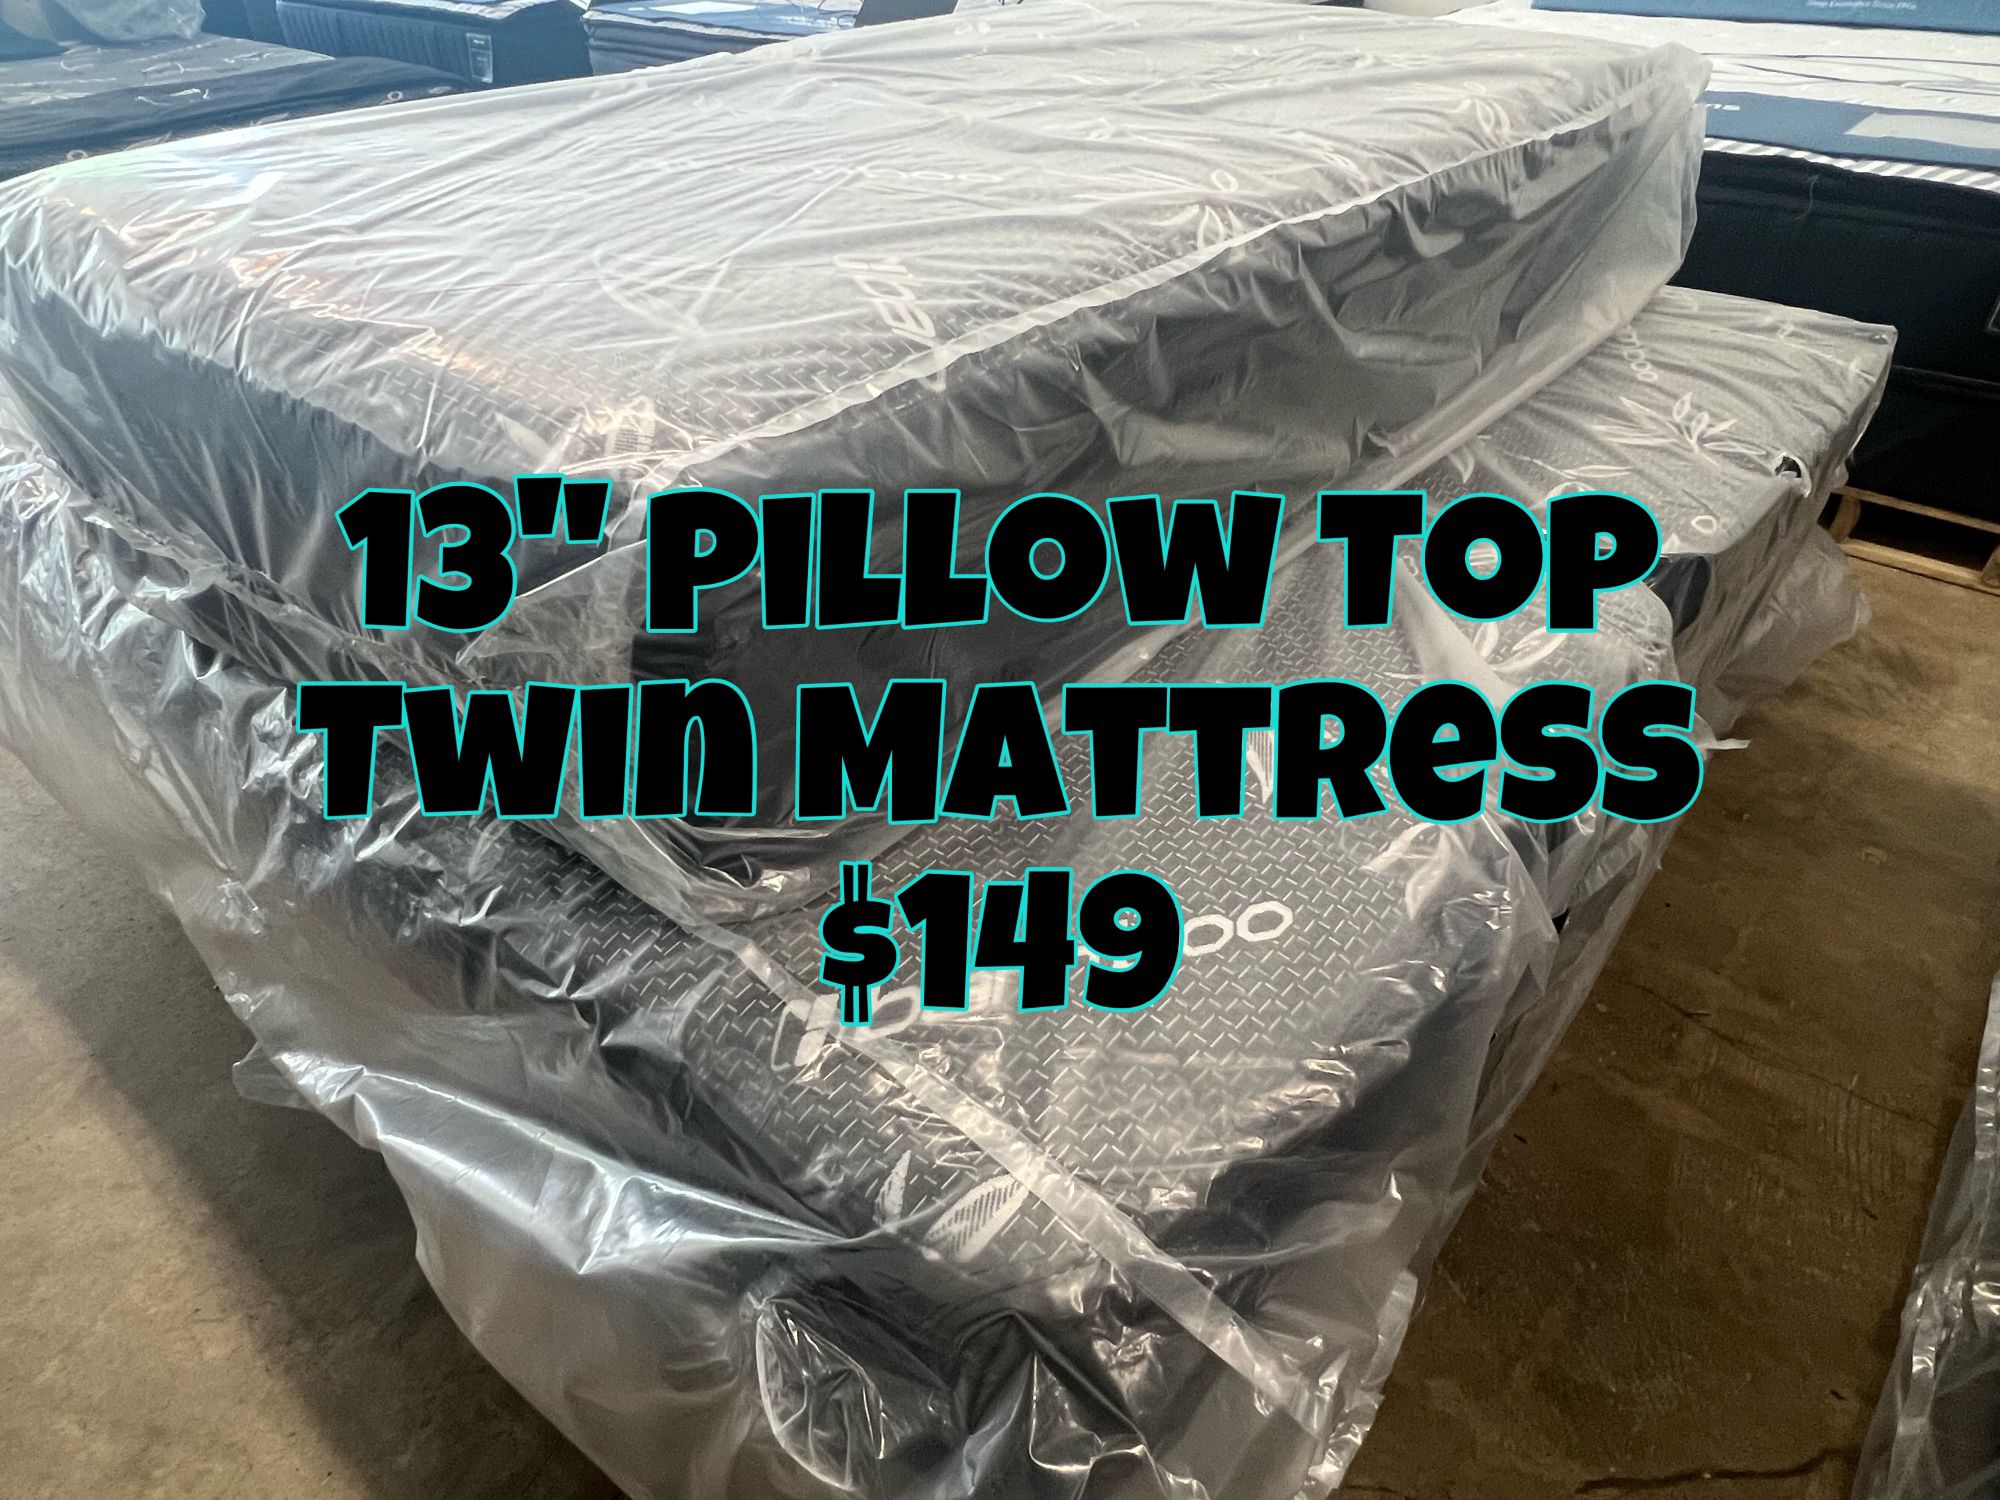 NEW 13” Pillow top mattress Twin Size